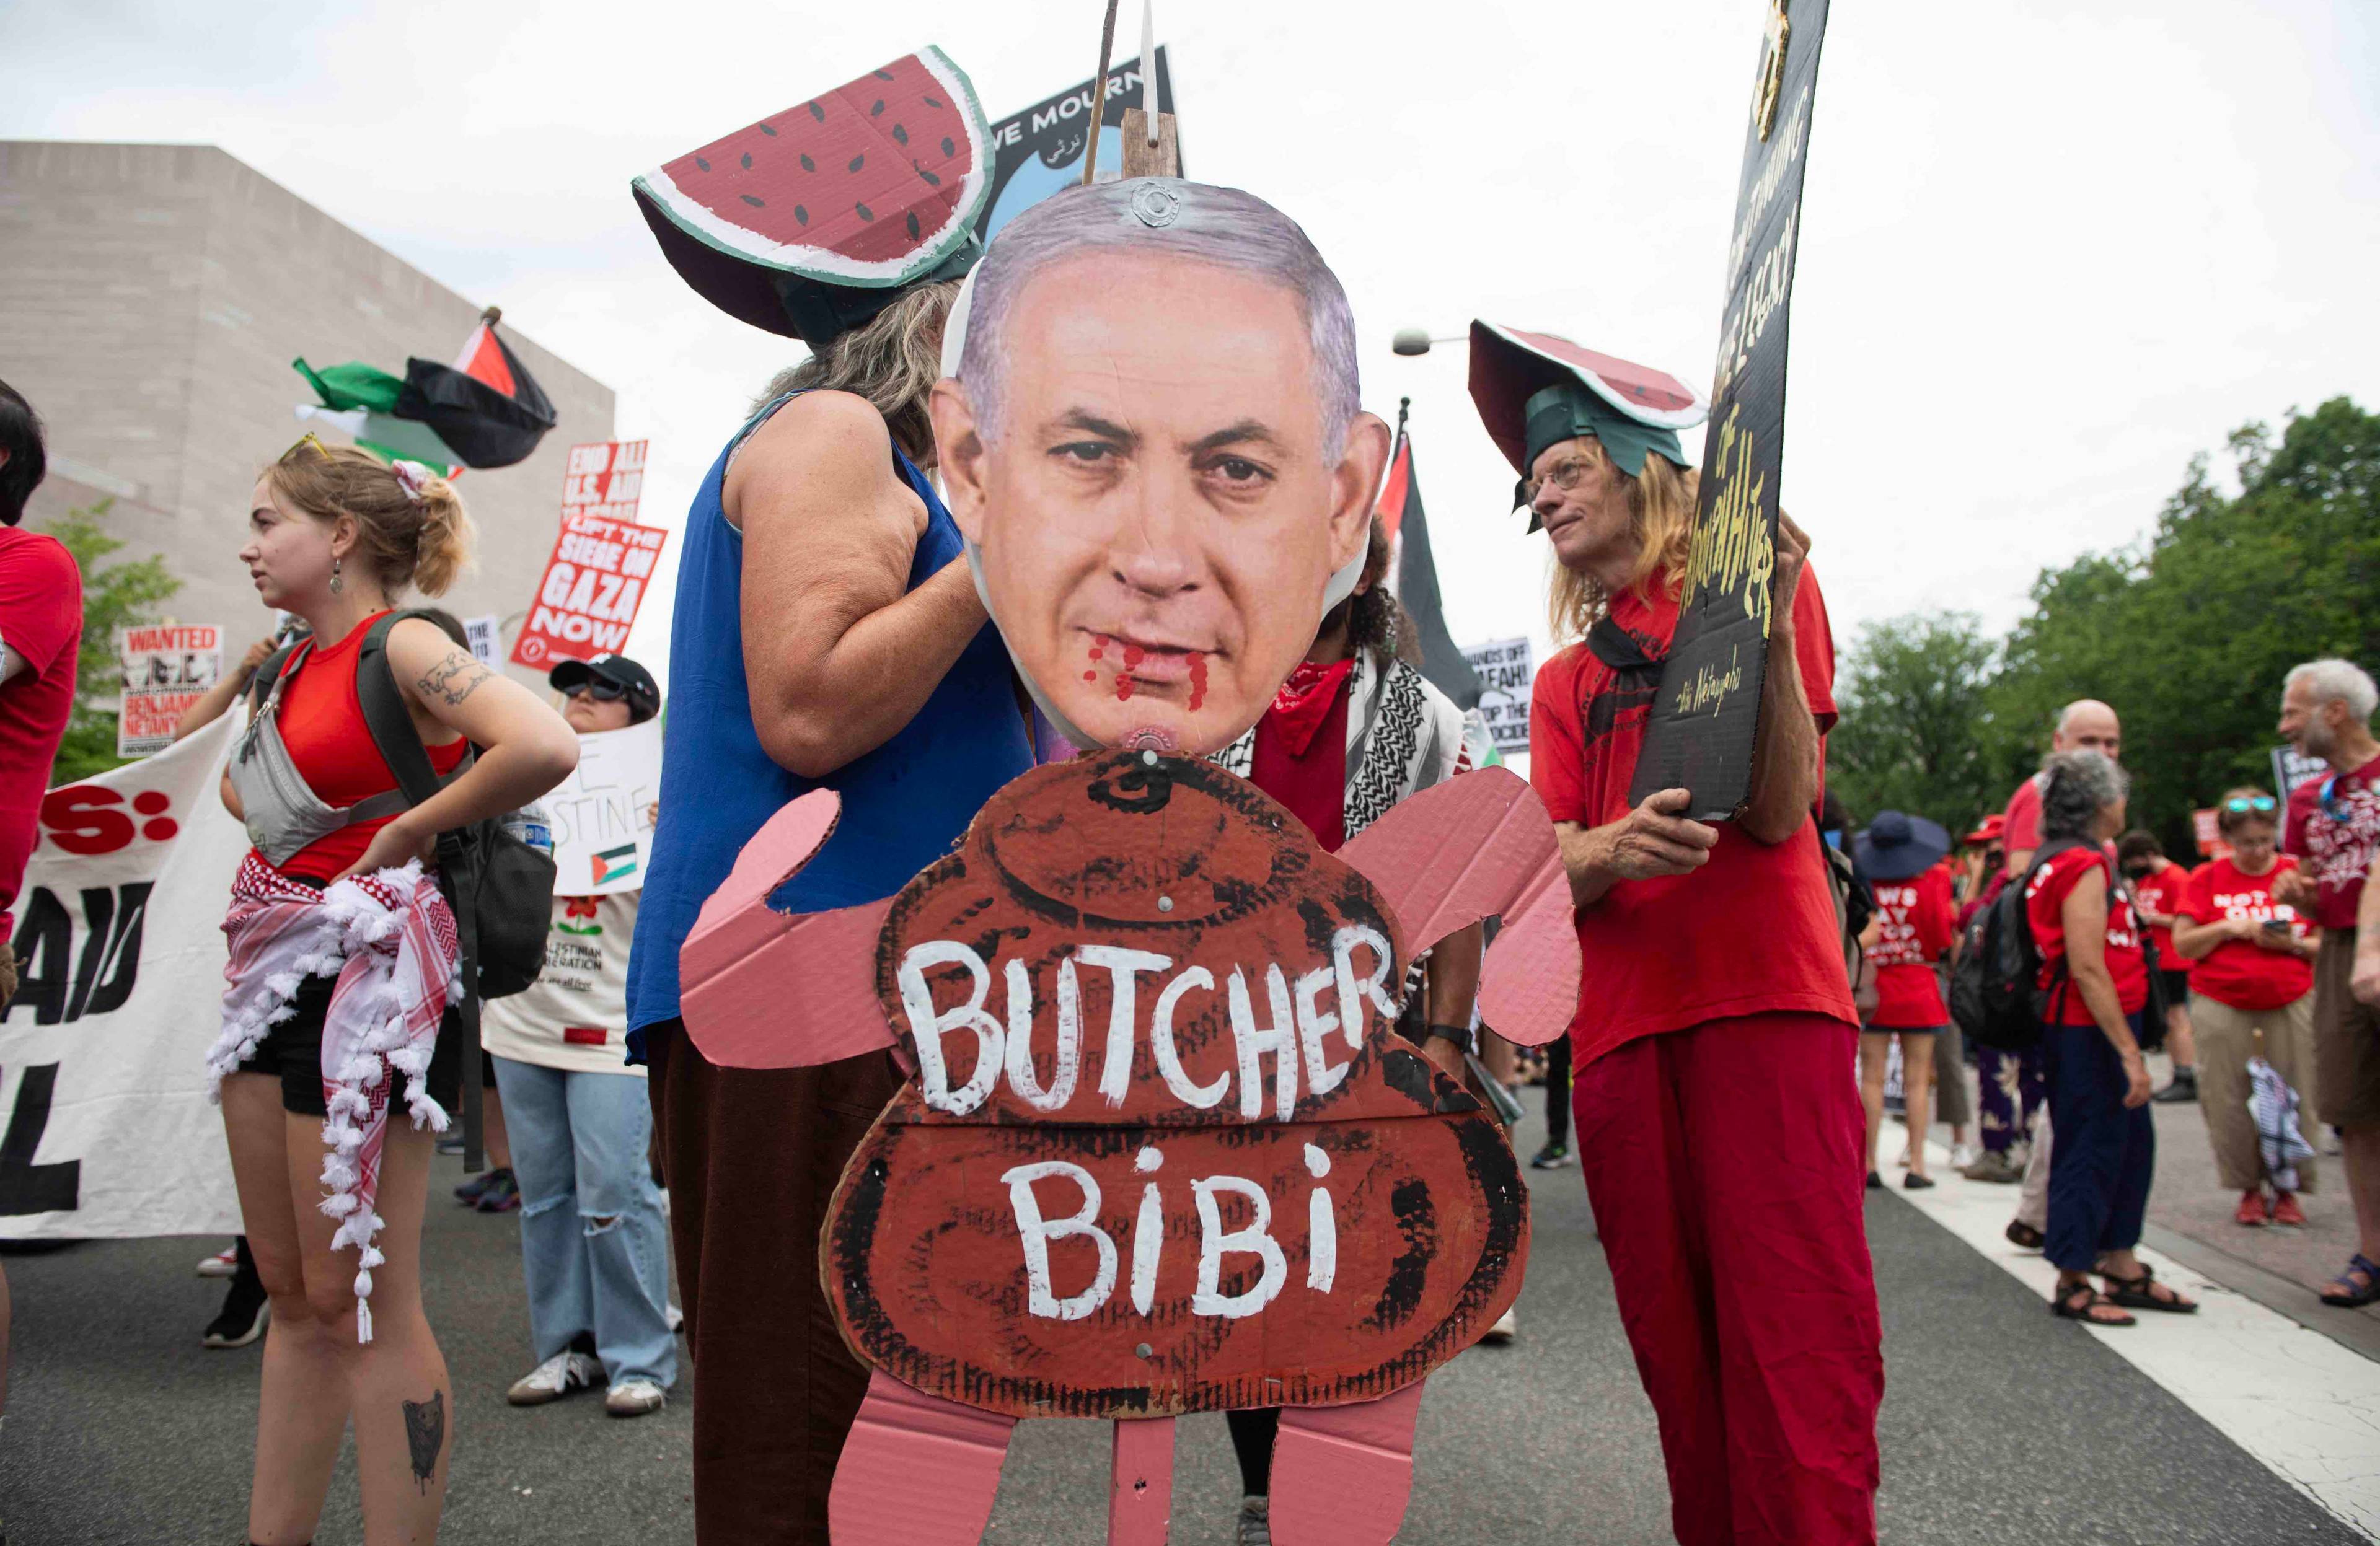 Demonstracja przeciwko wizycie Binjamina Netanjamu w USA. na zdjęciu kukła przedstawiająca polityka z napisem Butcher Bibi (Rzeźnik Bibi)